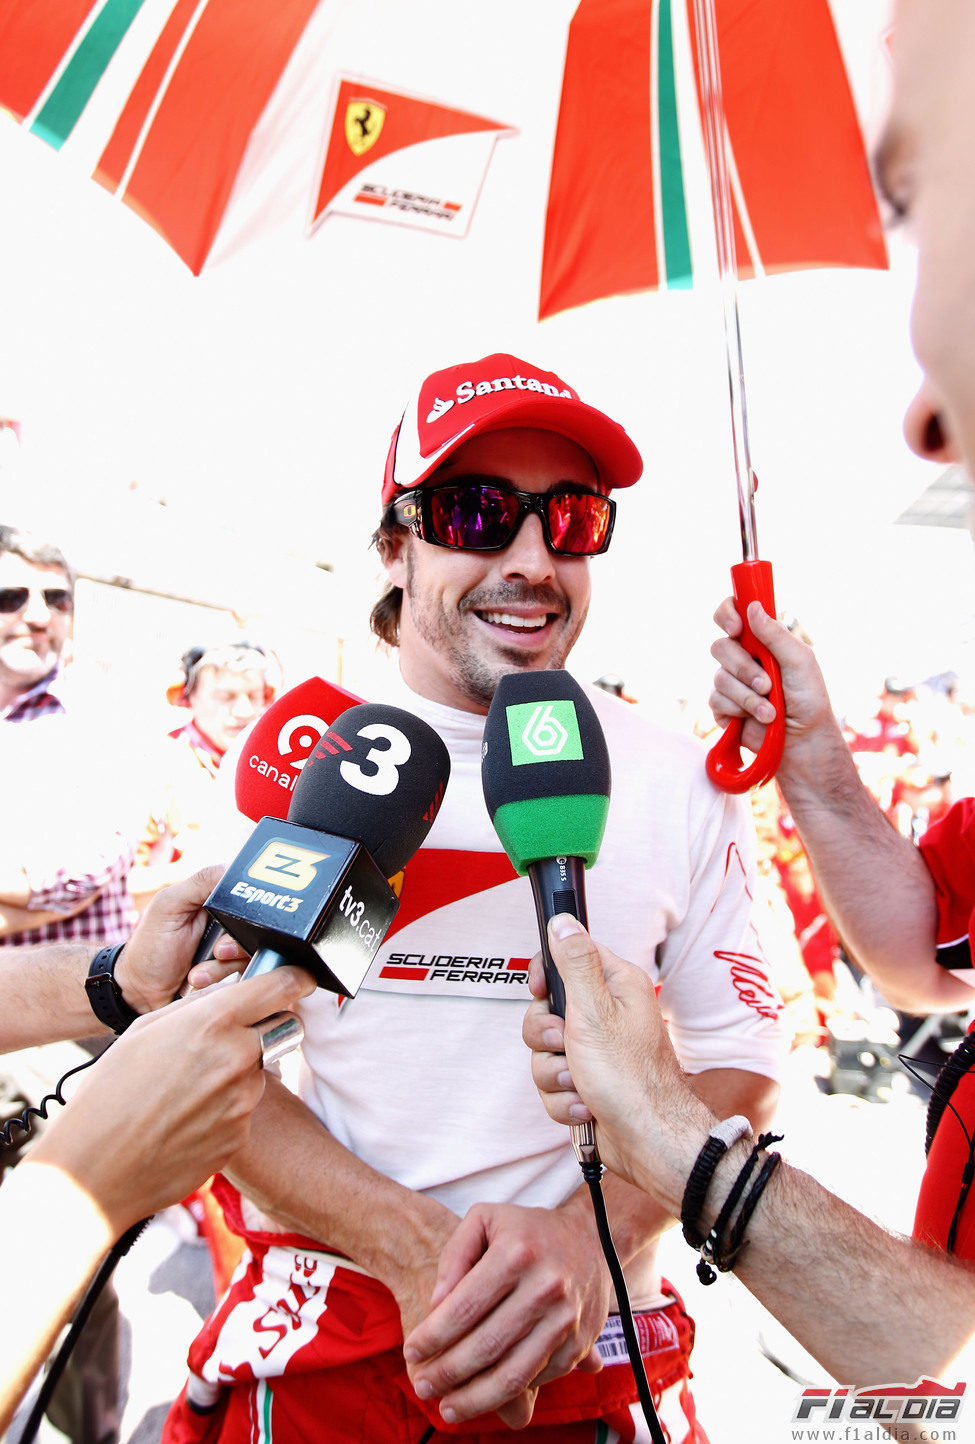 Las televisiones entrevistan a Alonso en el GP de España 2011